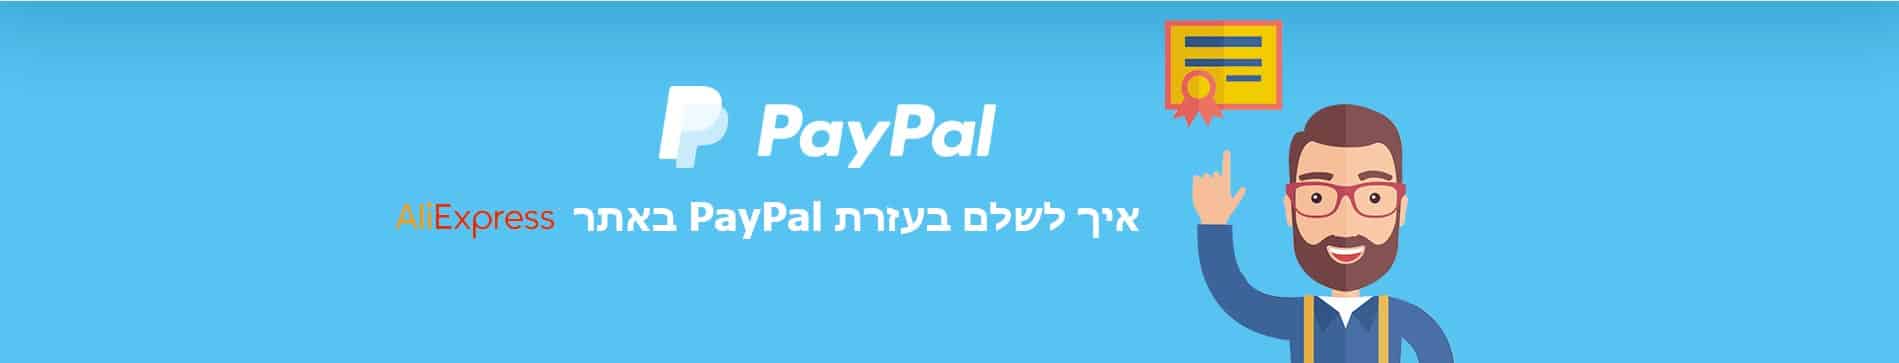 לשלם בעזרת PayPal באתר עלי אקספרס (AliExpress)